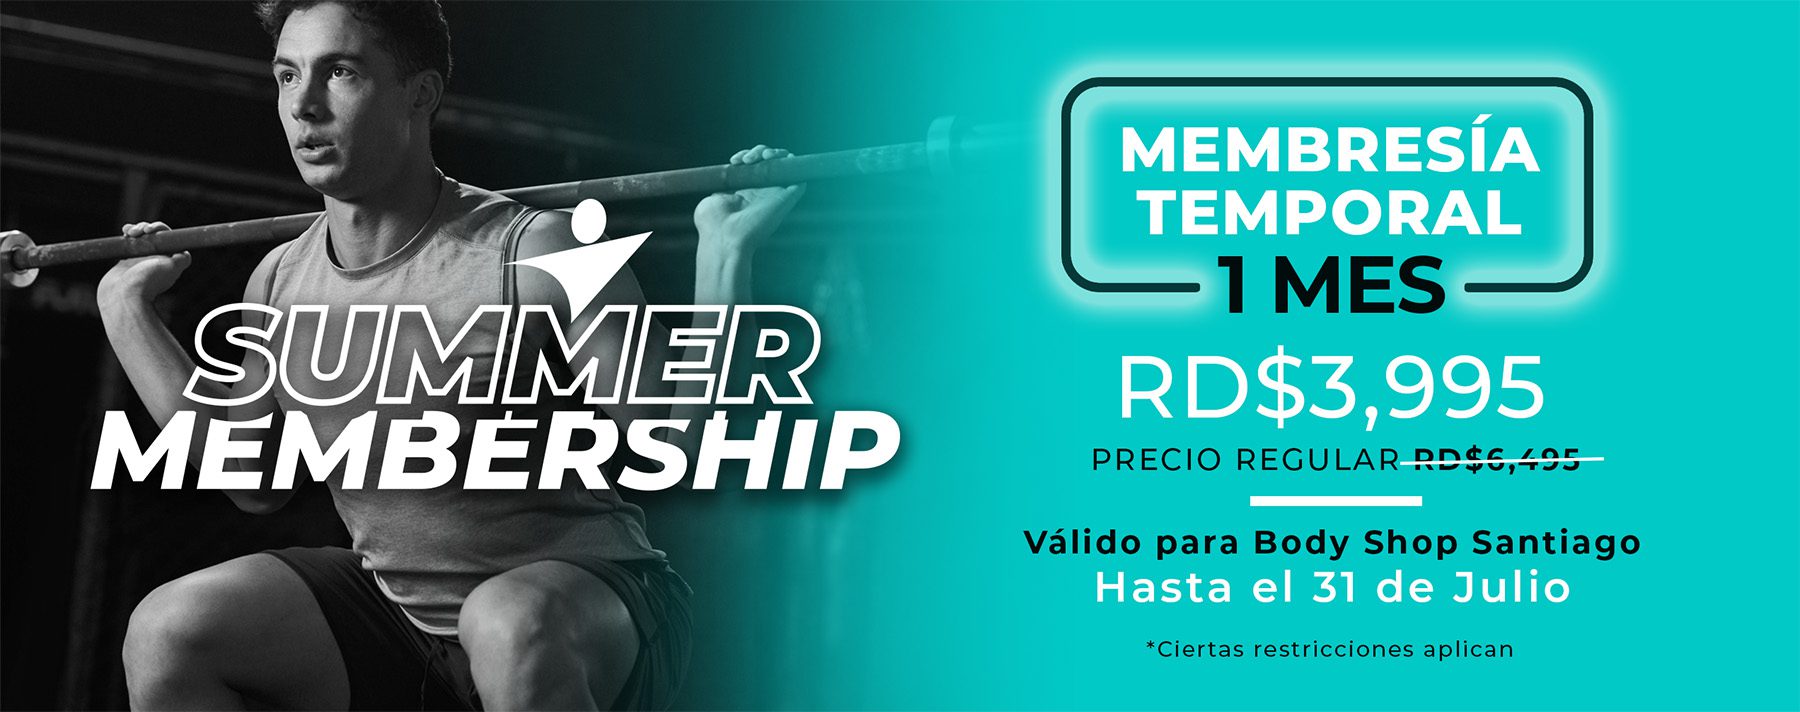 Summer Membership